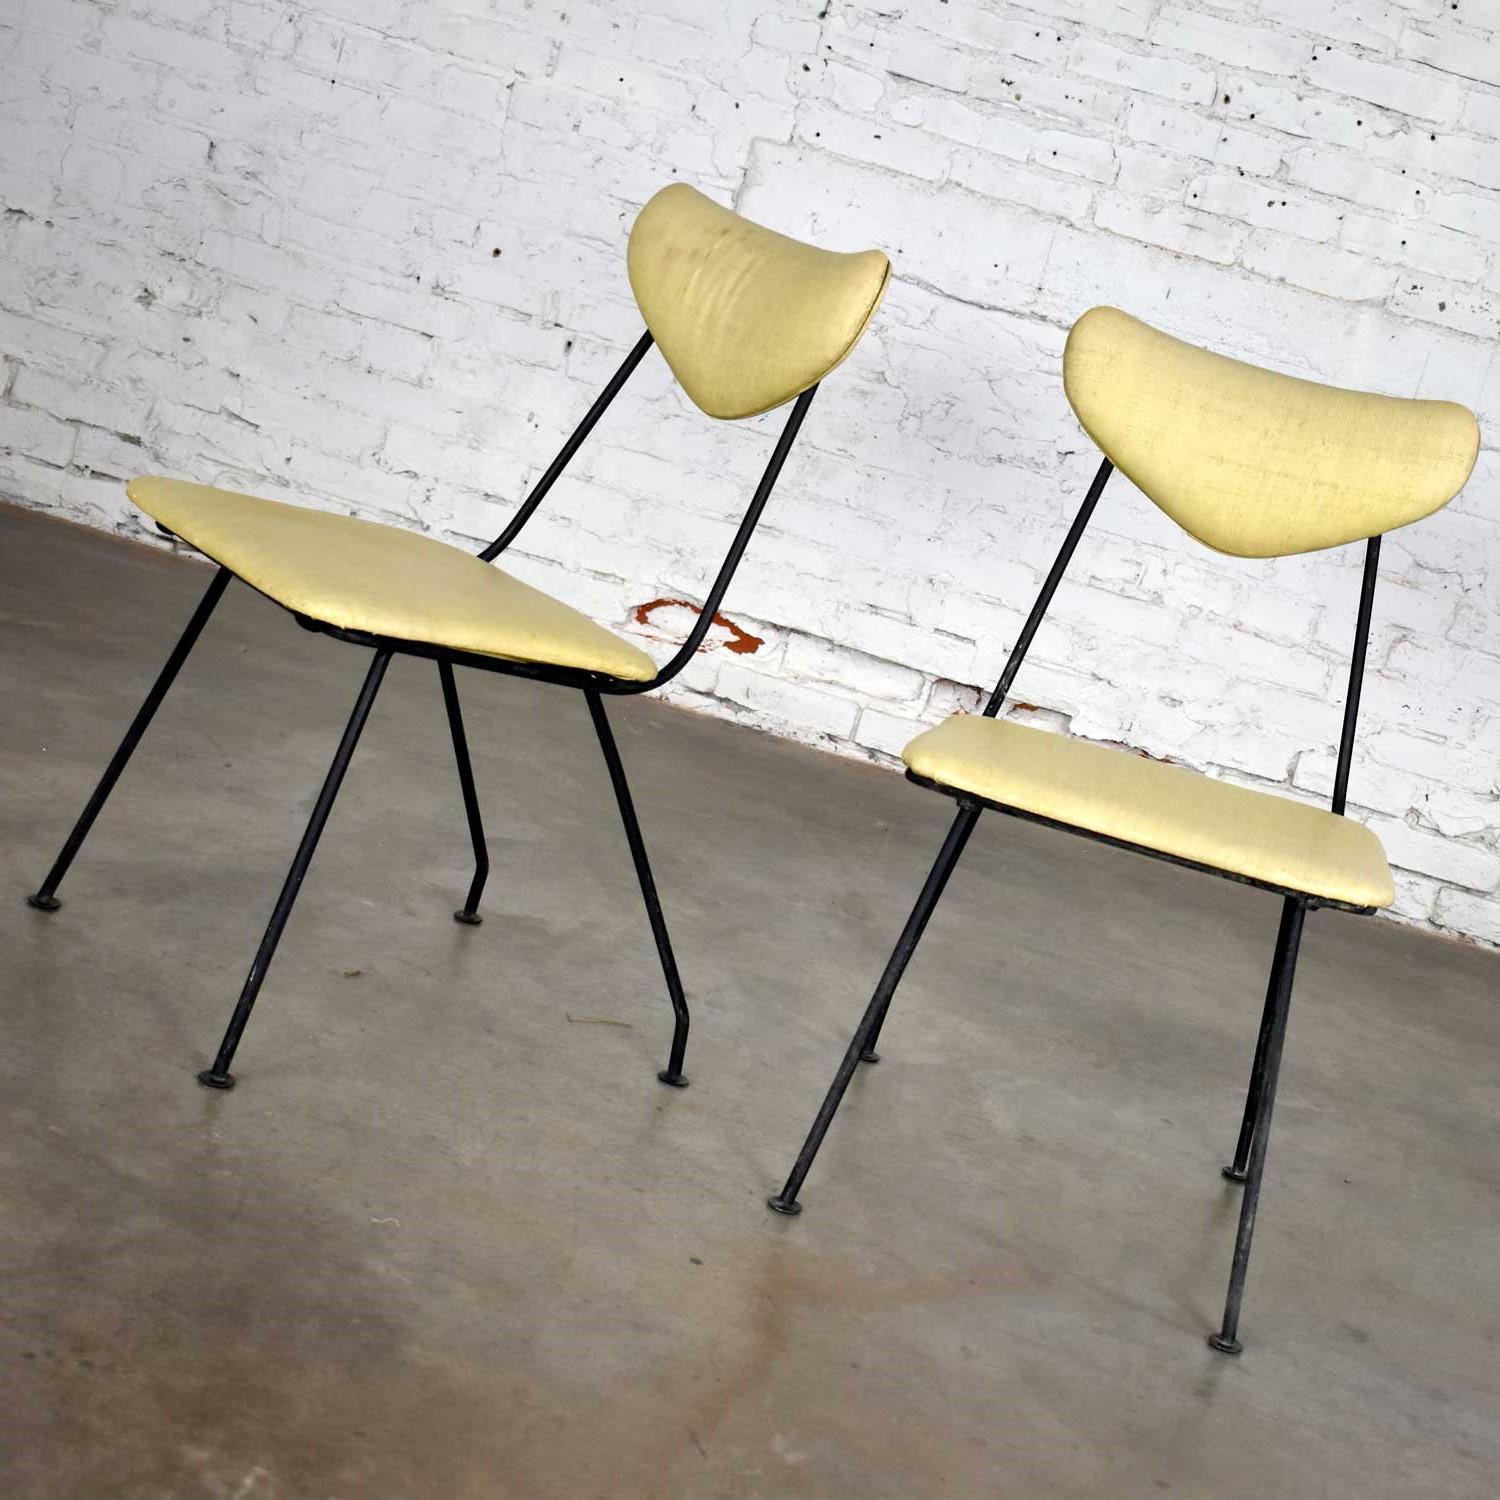 Jolie paire de chaises de patio Neva-Rust, de Salterini, datant du milieu du siècle dernier. Elles sont fabriquées en vinyle texturé ou en similicuir jaune d'origine, avec un cadre en fer forgé peint en noir. Belle condition avec l'usure comme on